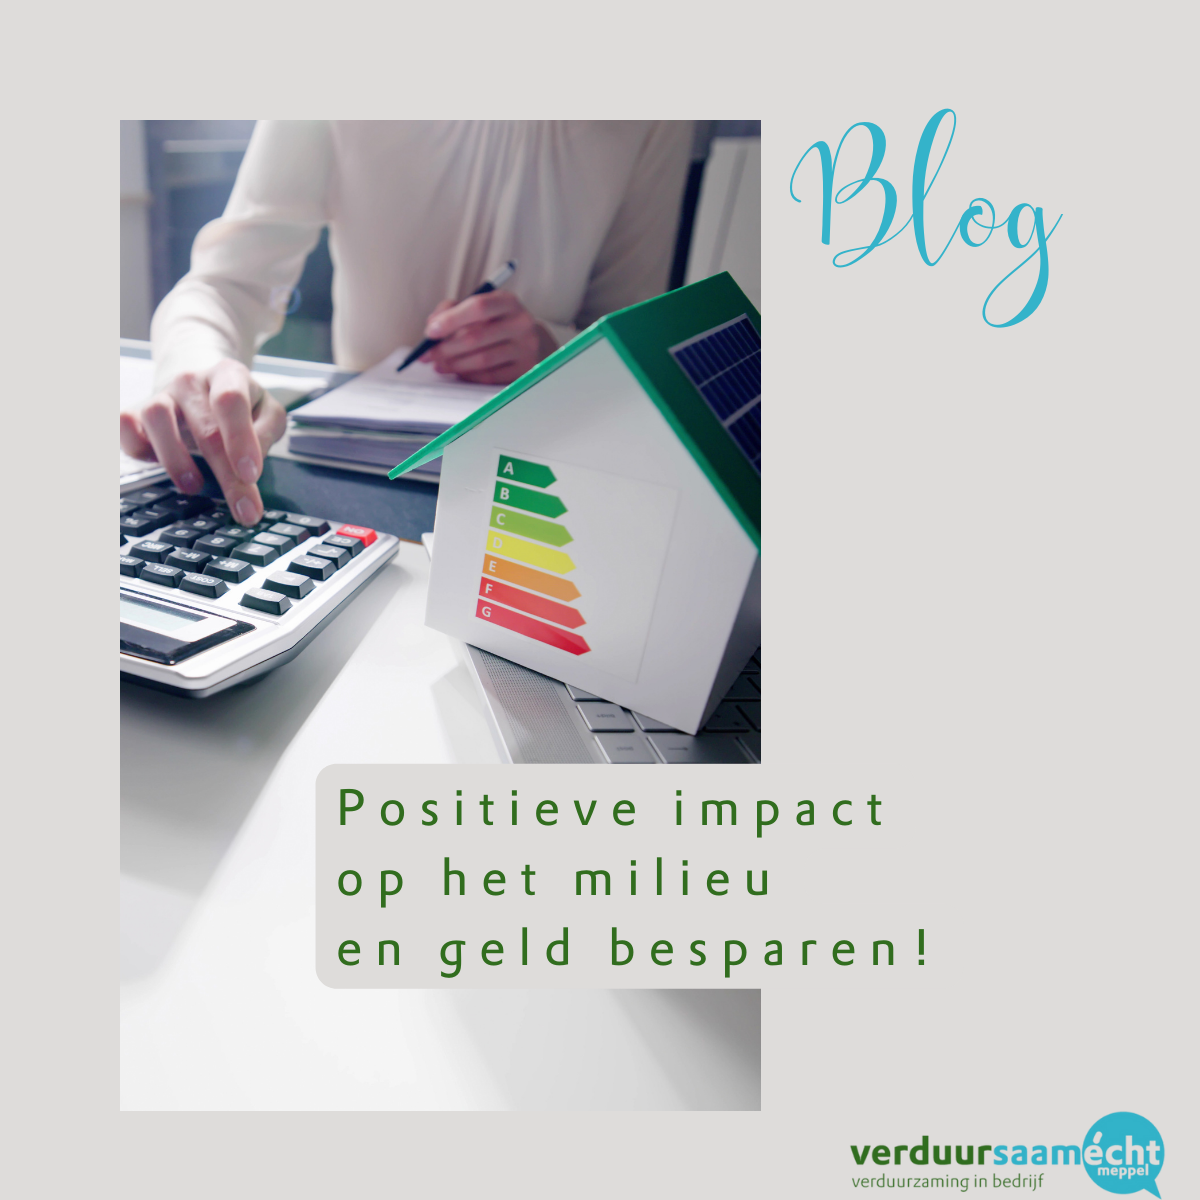 Blog positieve impact op het milieu en geld besparen door VerduurSaam Écht Meppel